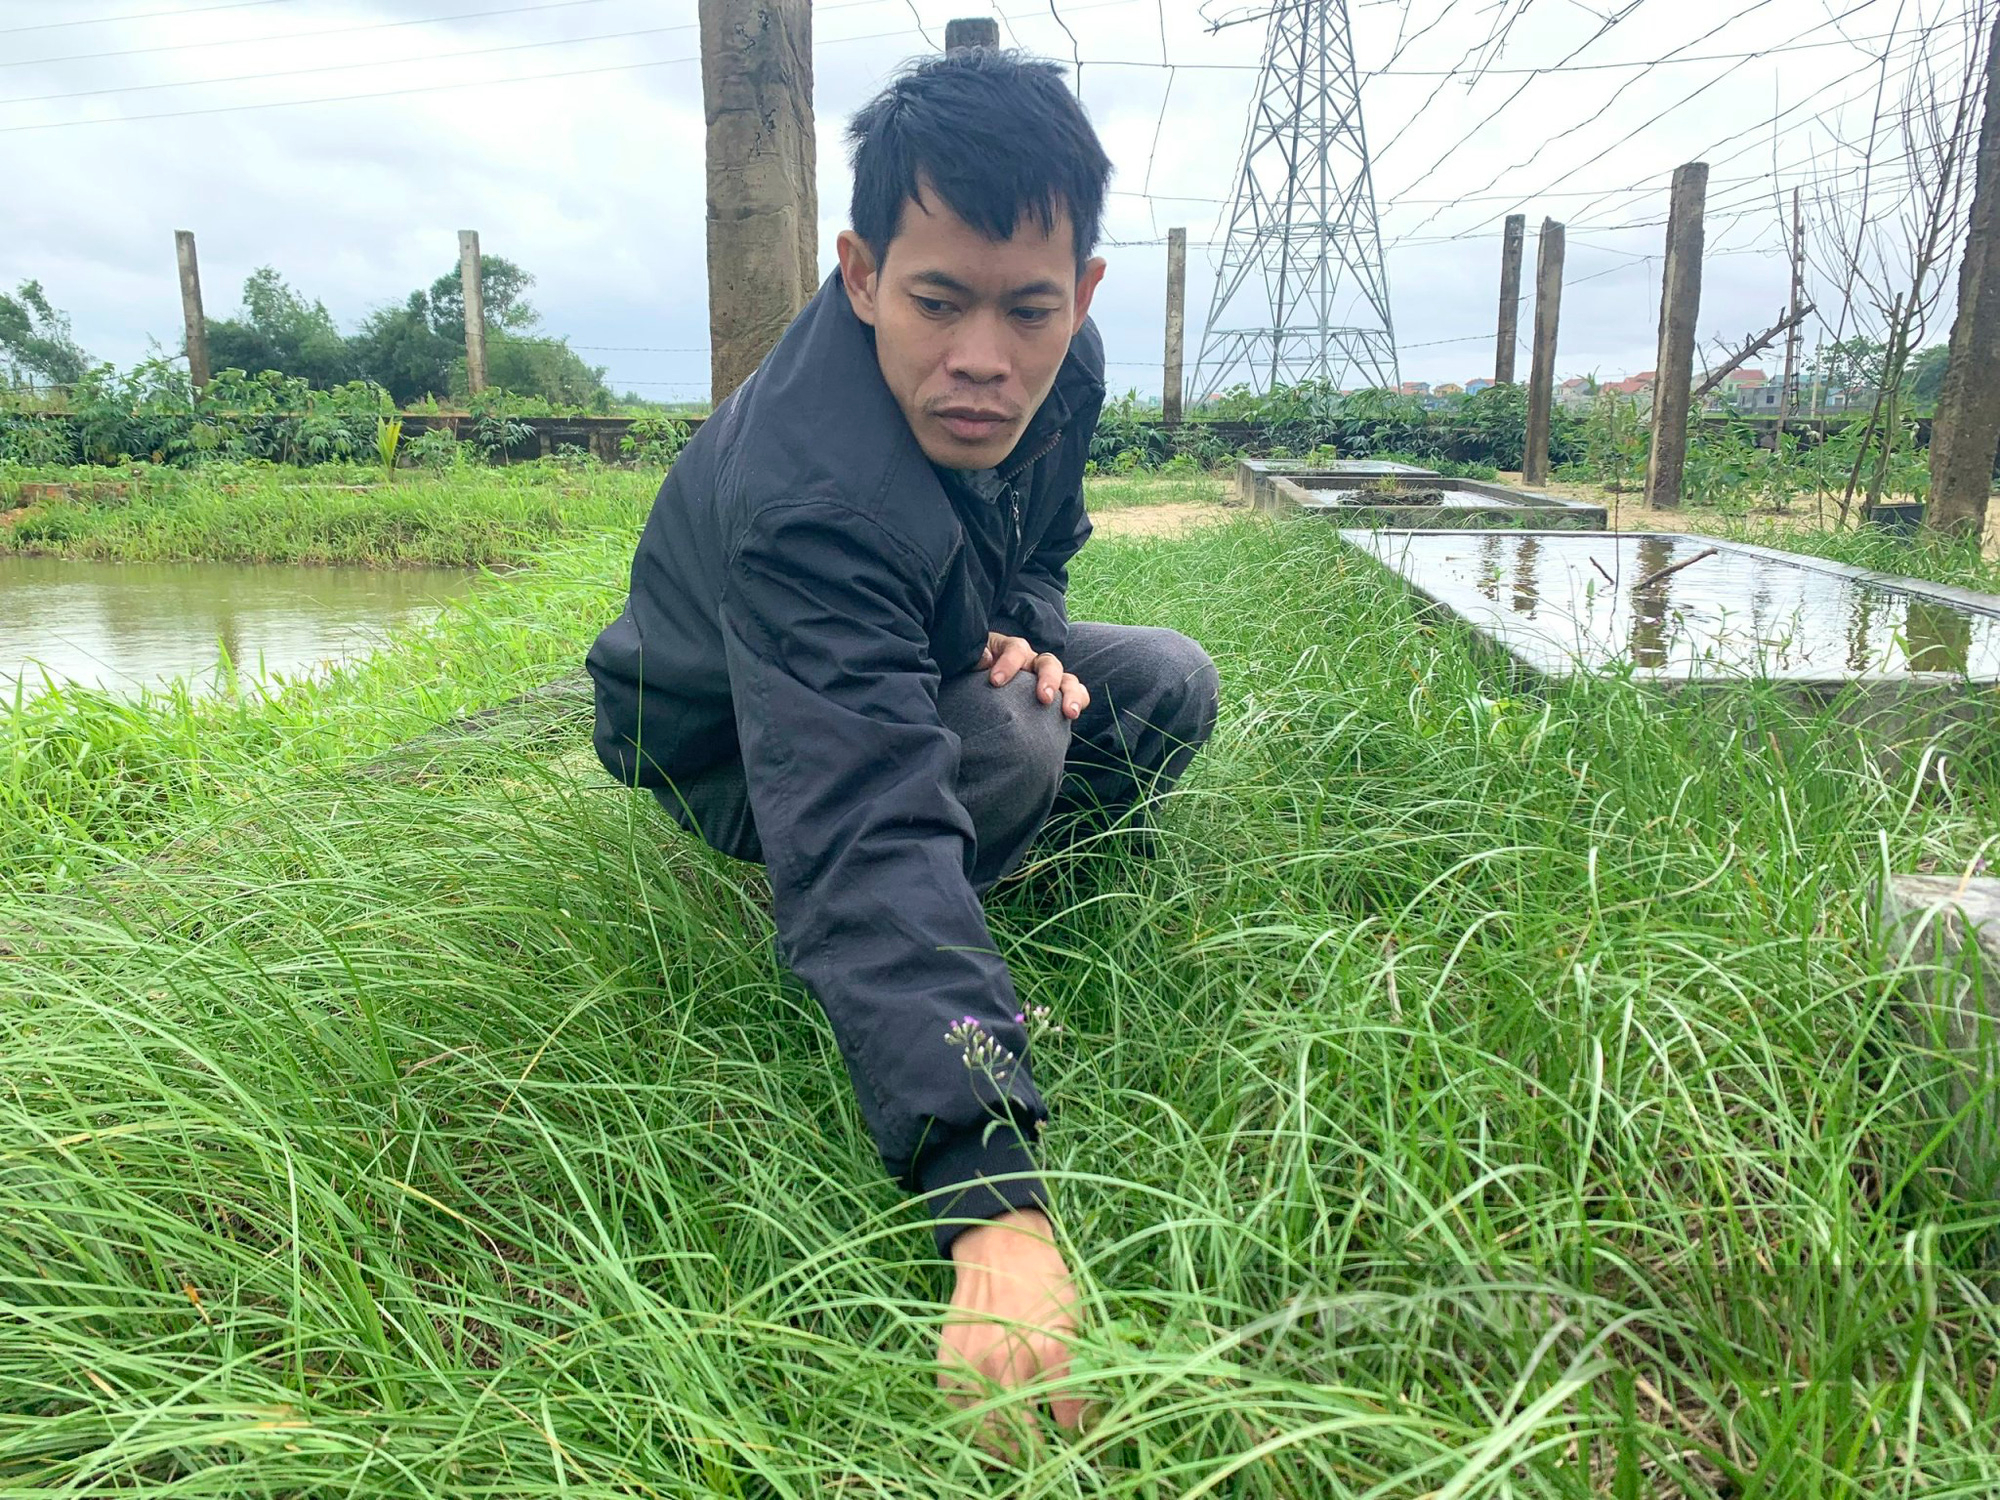 Quảng Bình: Chàng trai khuyết tật khấm khá nhờ trồng cỏ dại khiến cả làng ngỡ ngàng - Ảnh 2.